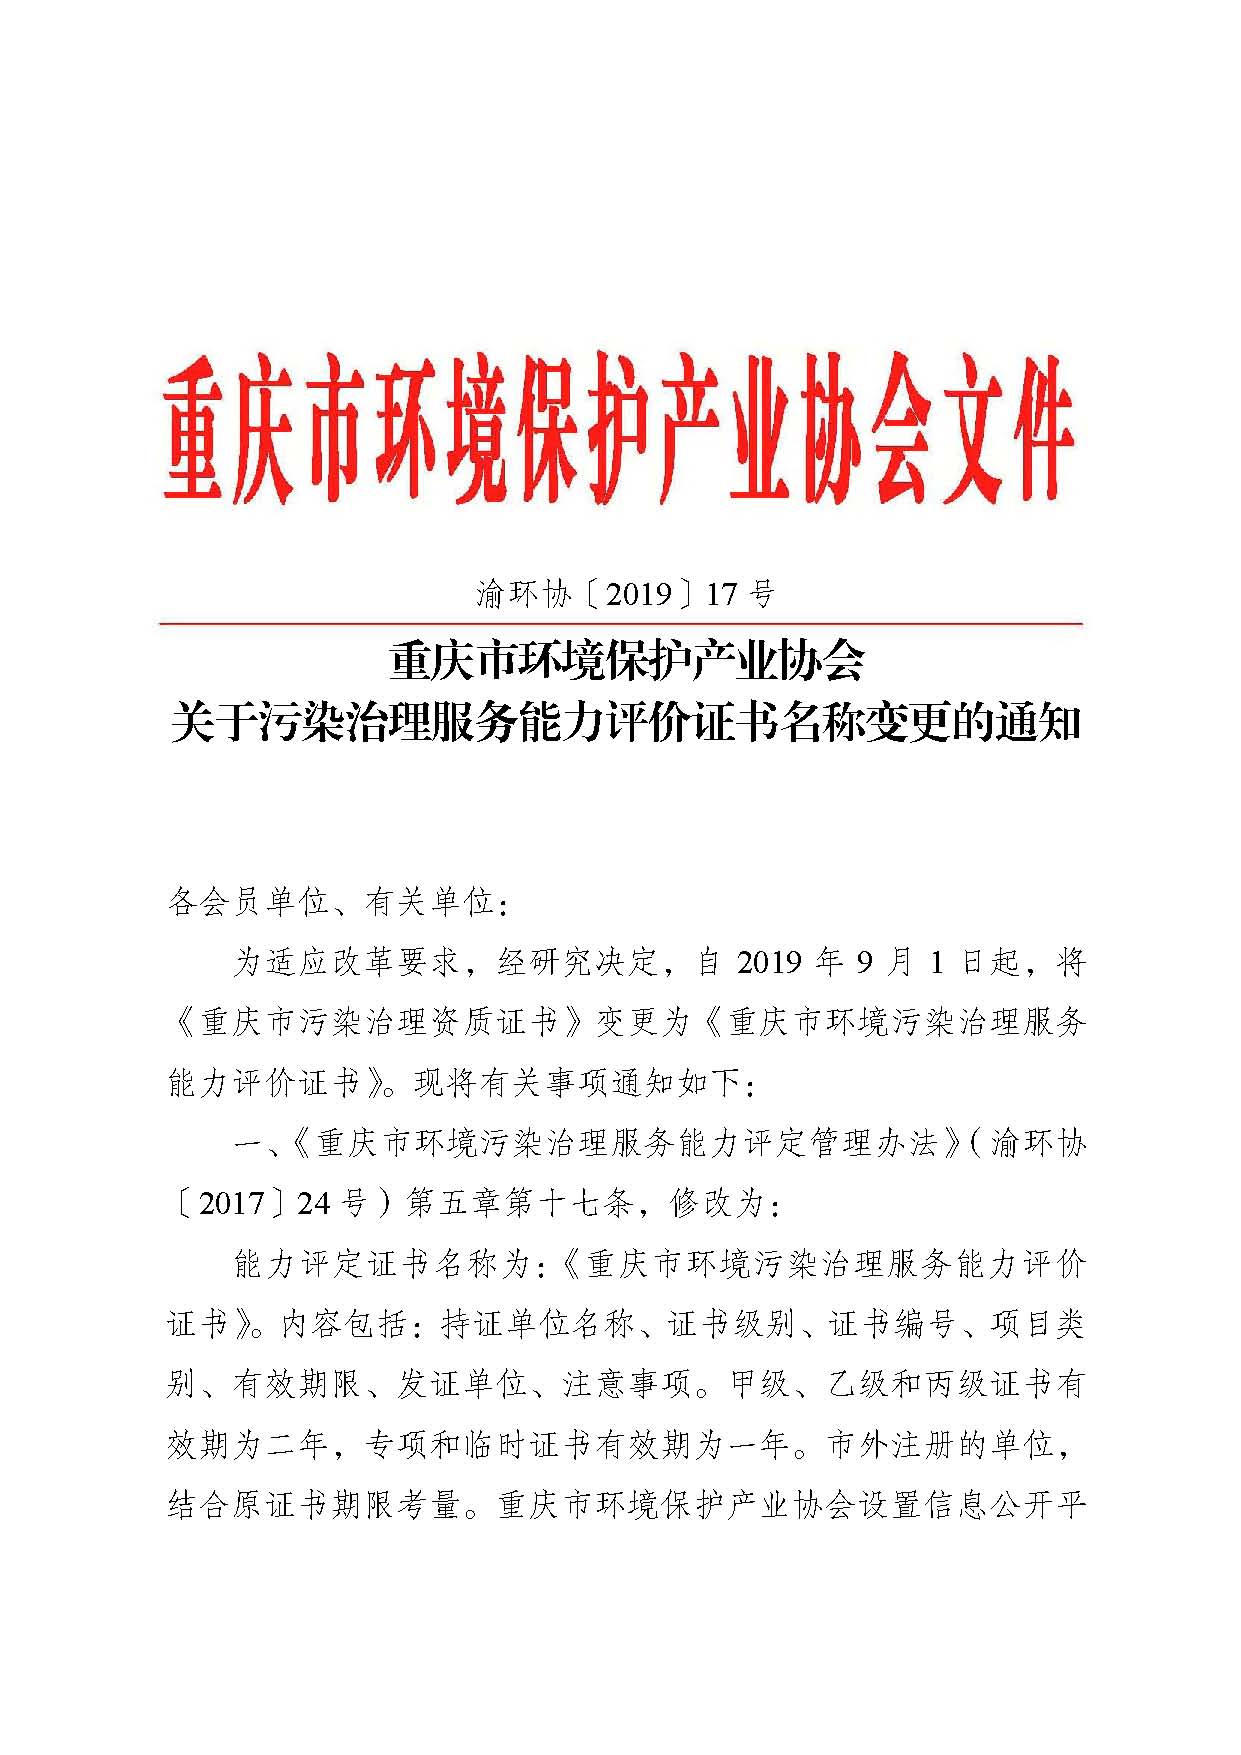 重庆市环境保护产业协会关于污染治理服务能力评价证书名称变更的通知-渝环协〔2019〕17号_页面_1